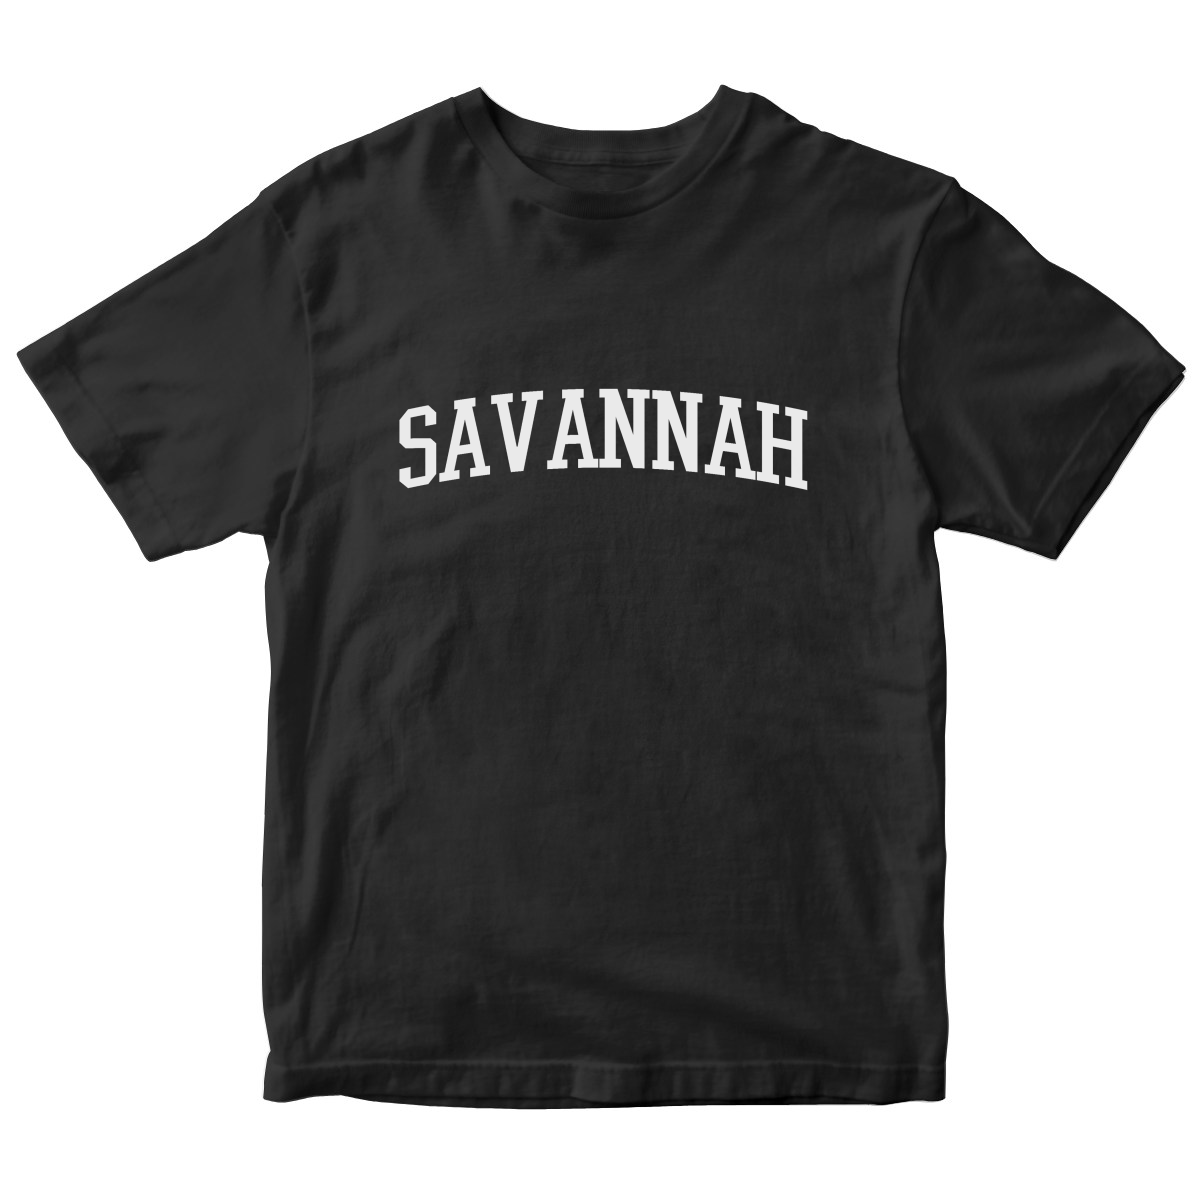 Savannah Kids T-shirt | Black